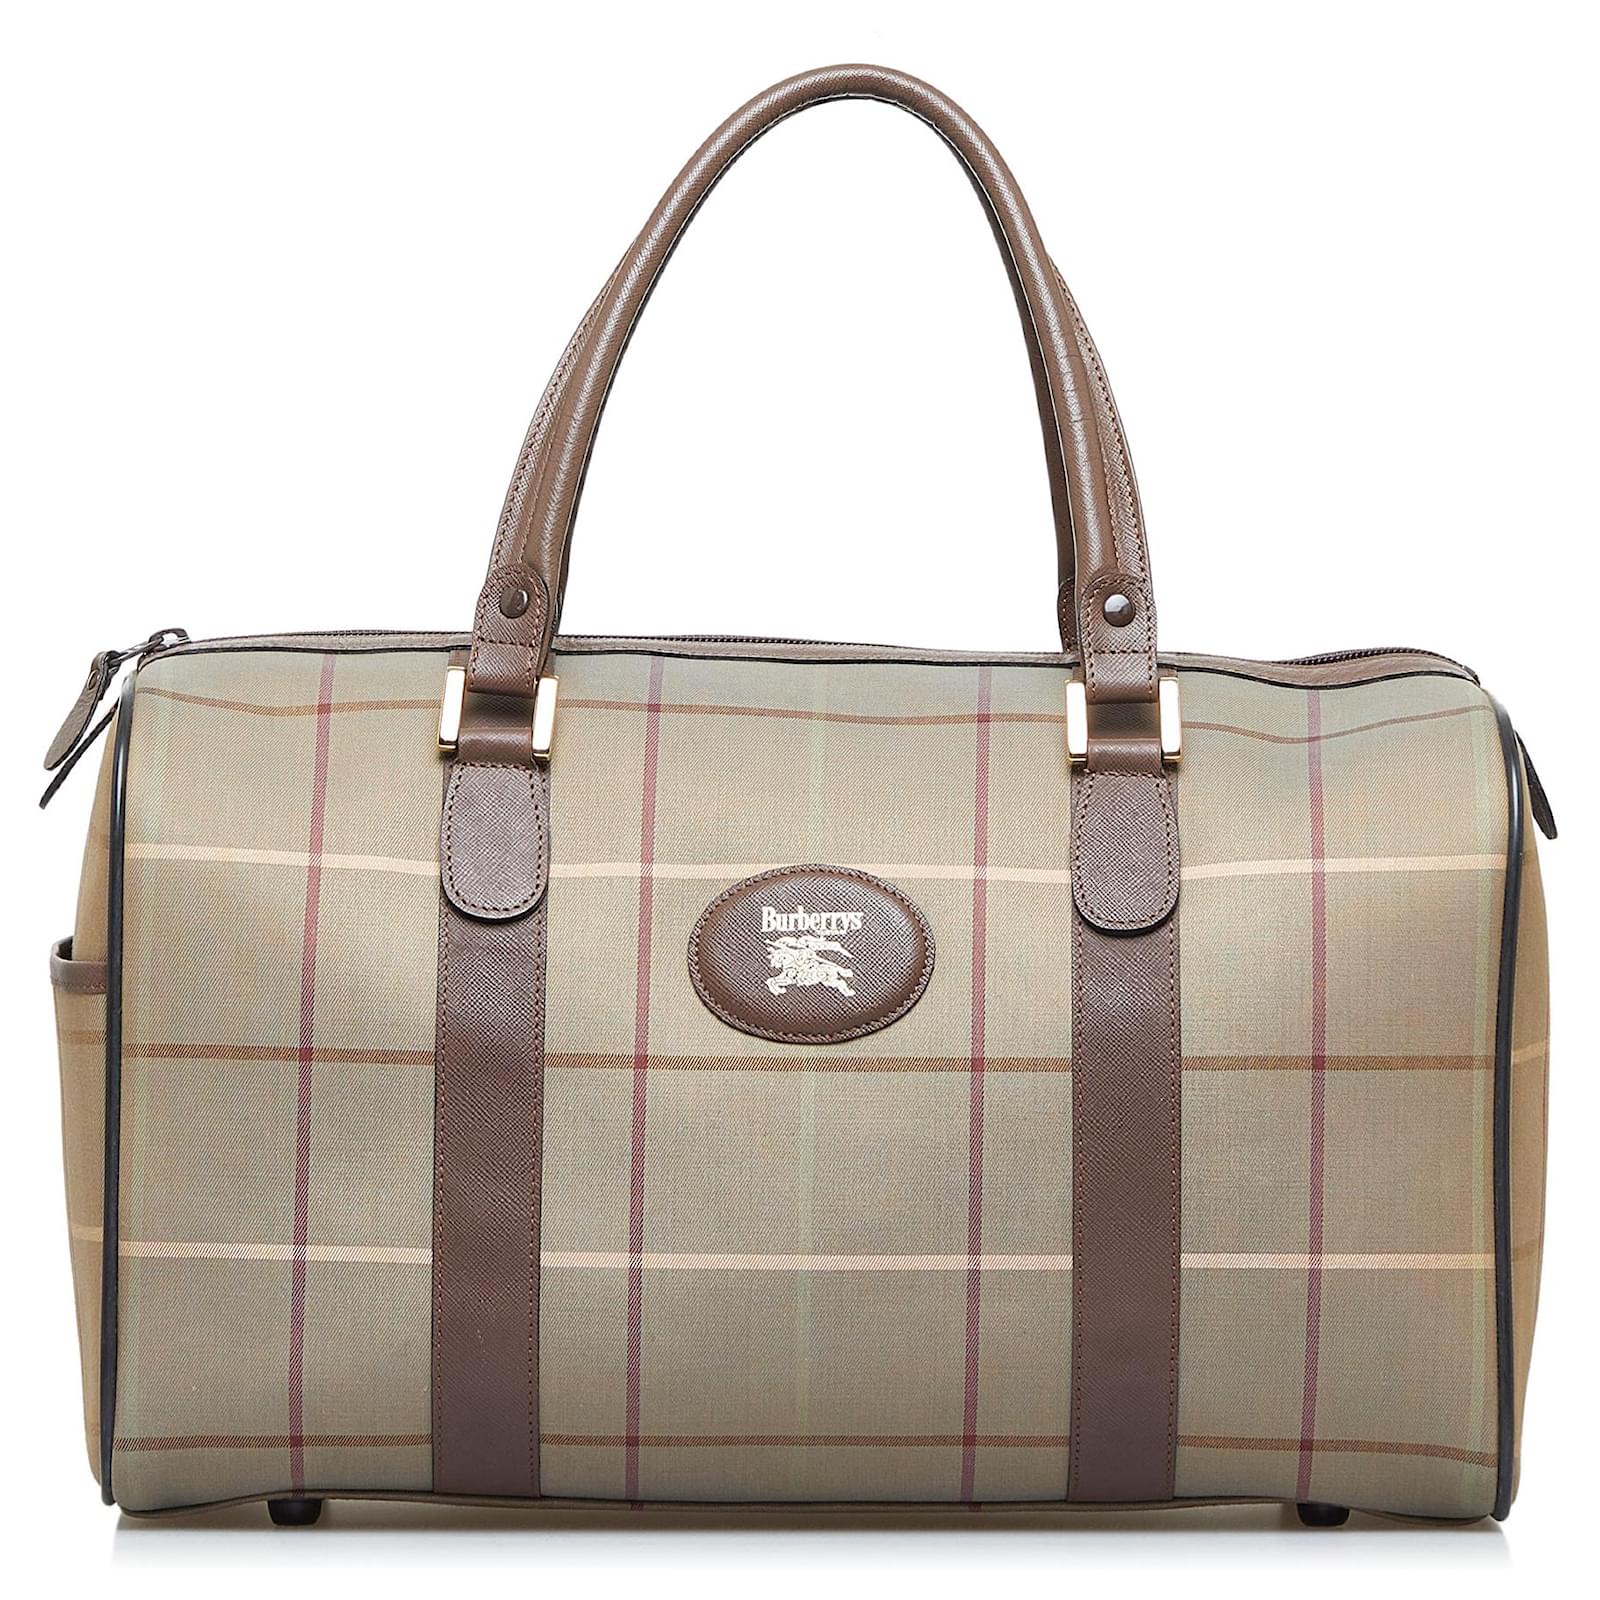 Burberry's Burberry House Check Handle Bag - Brown Handle Bags